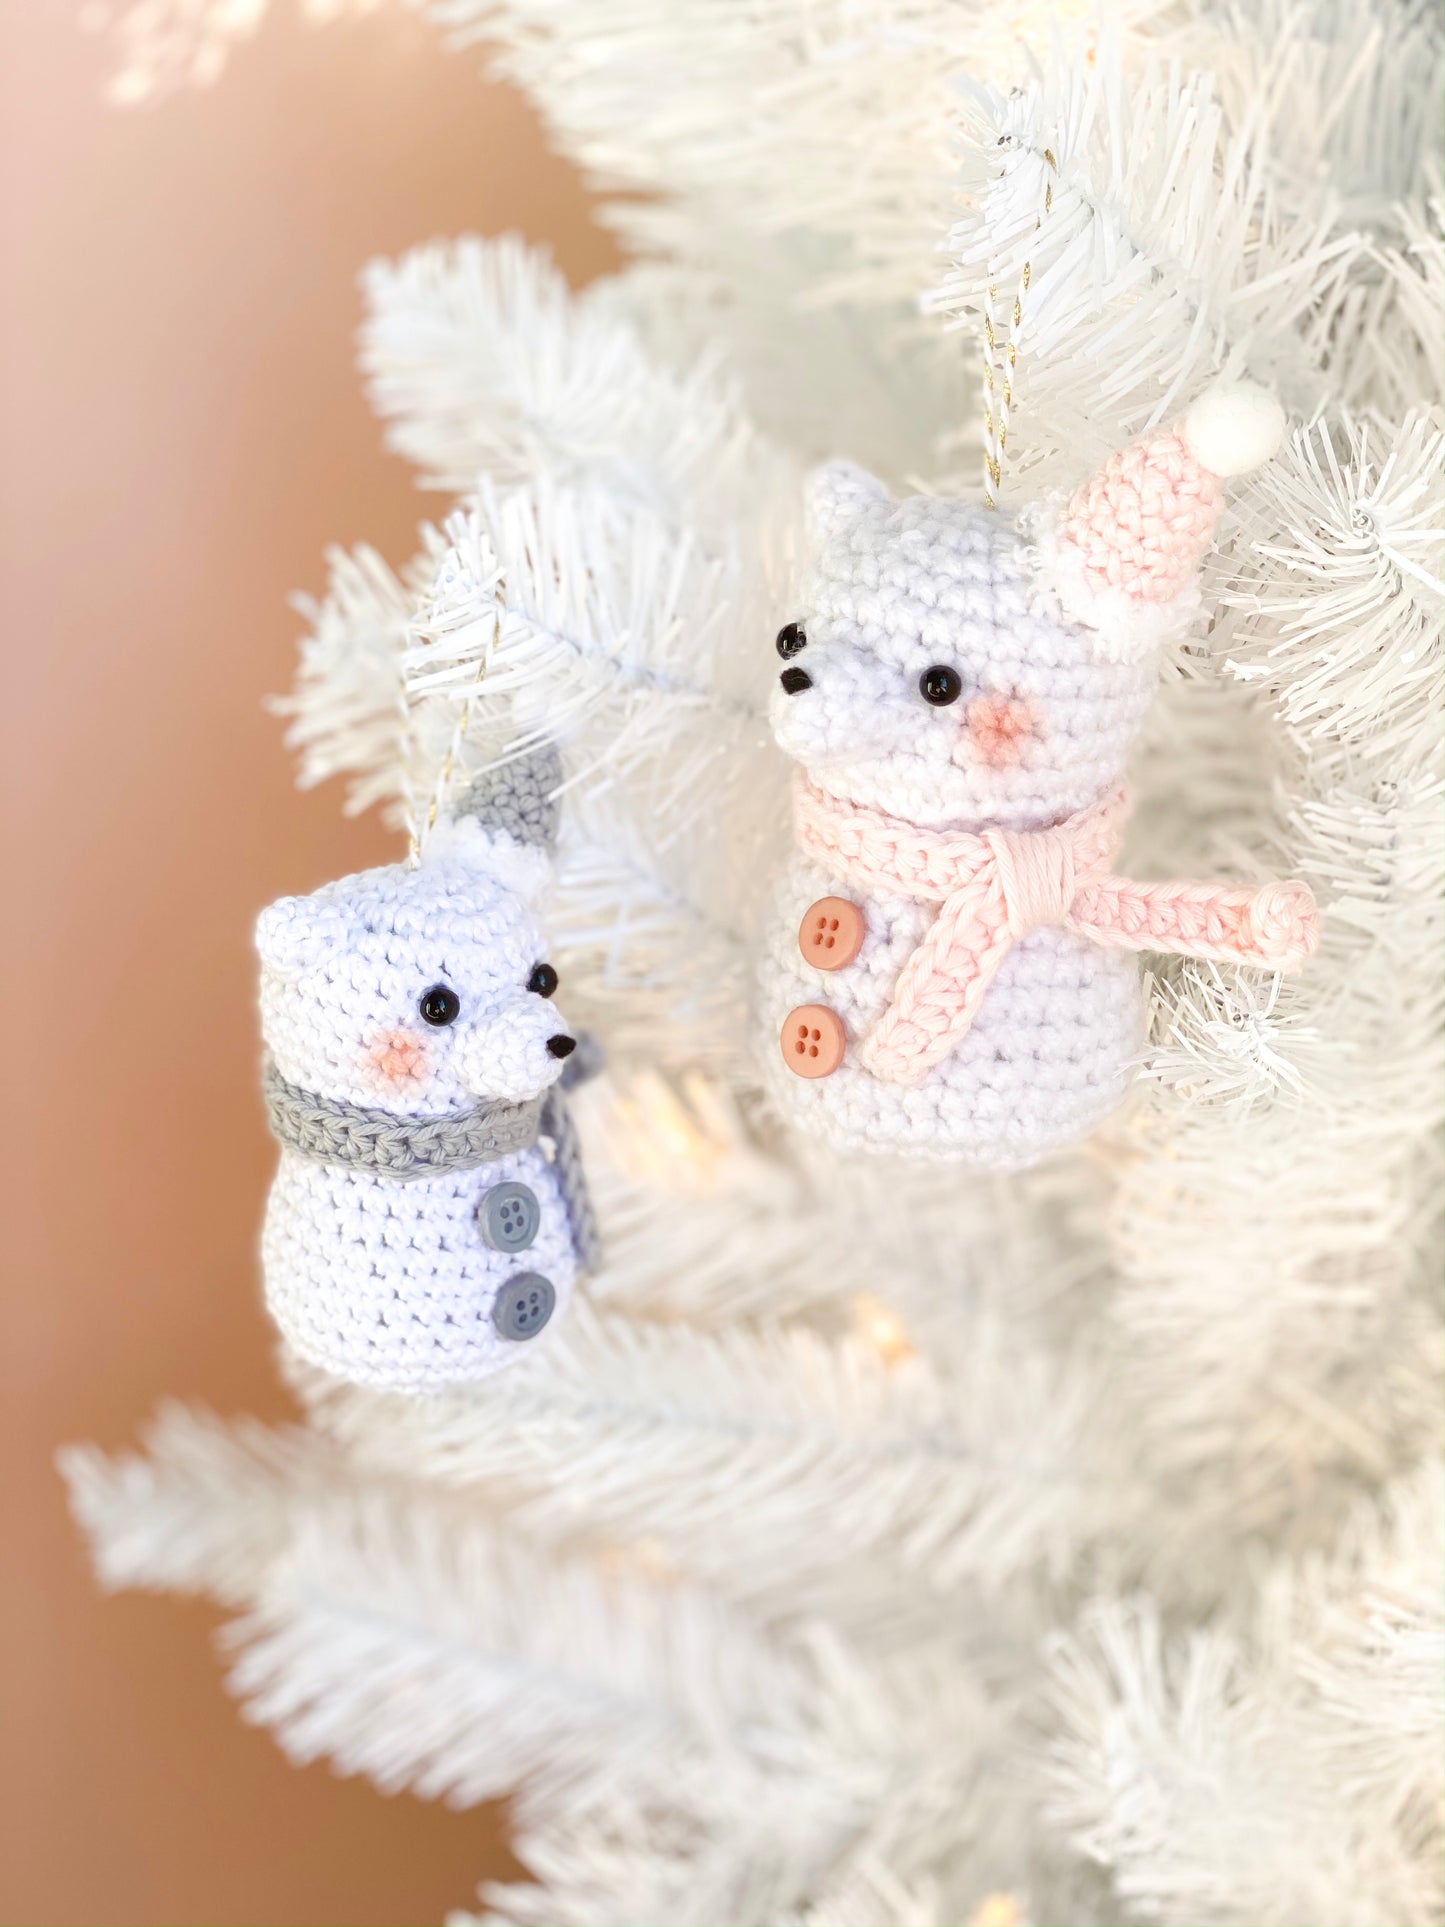 Snowbear Crochet Pattern